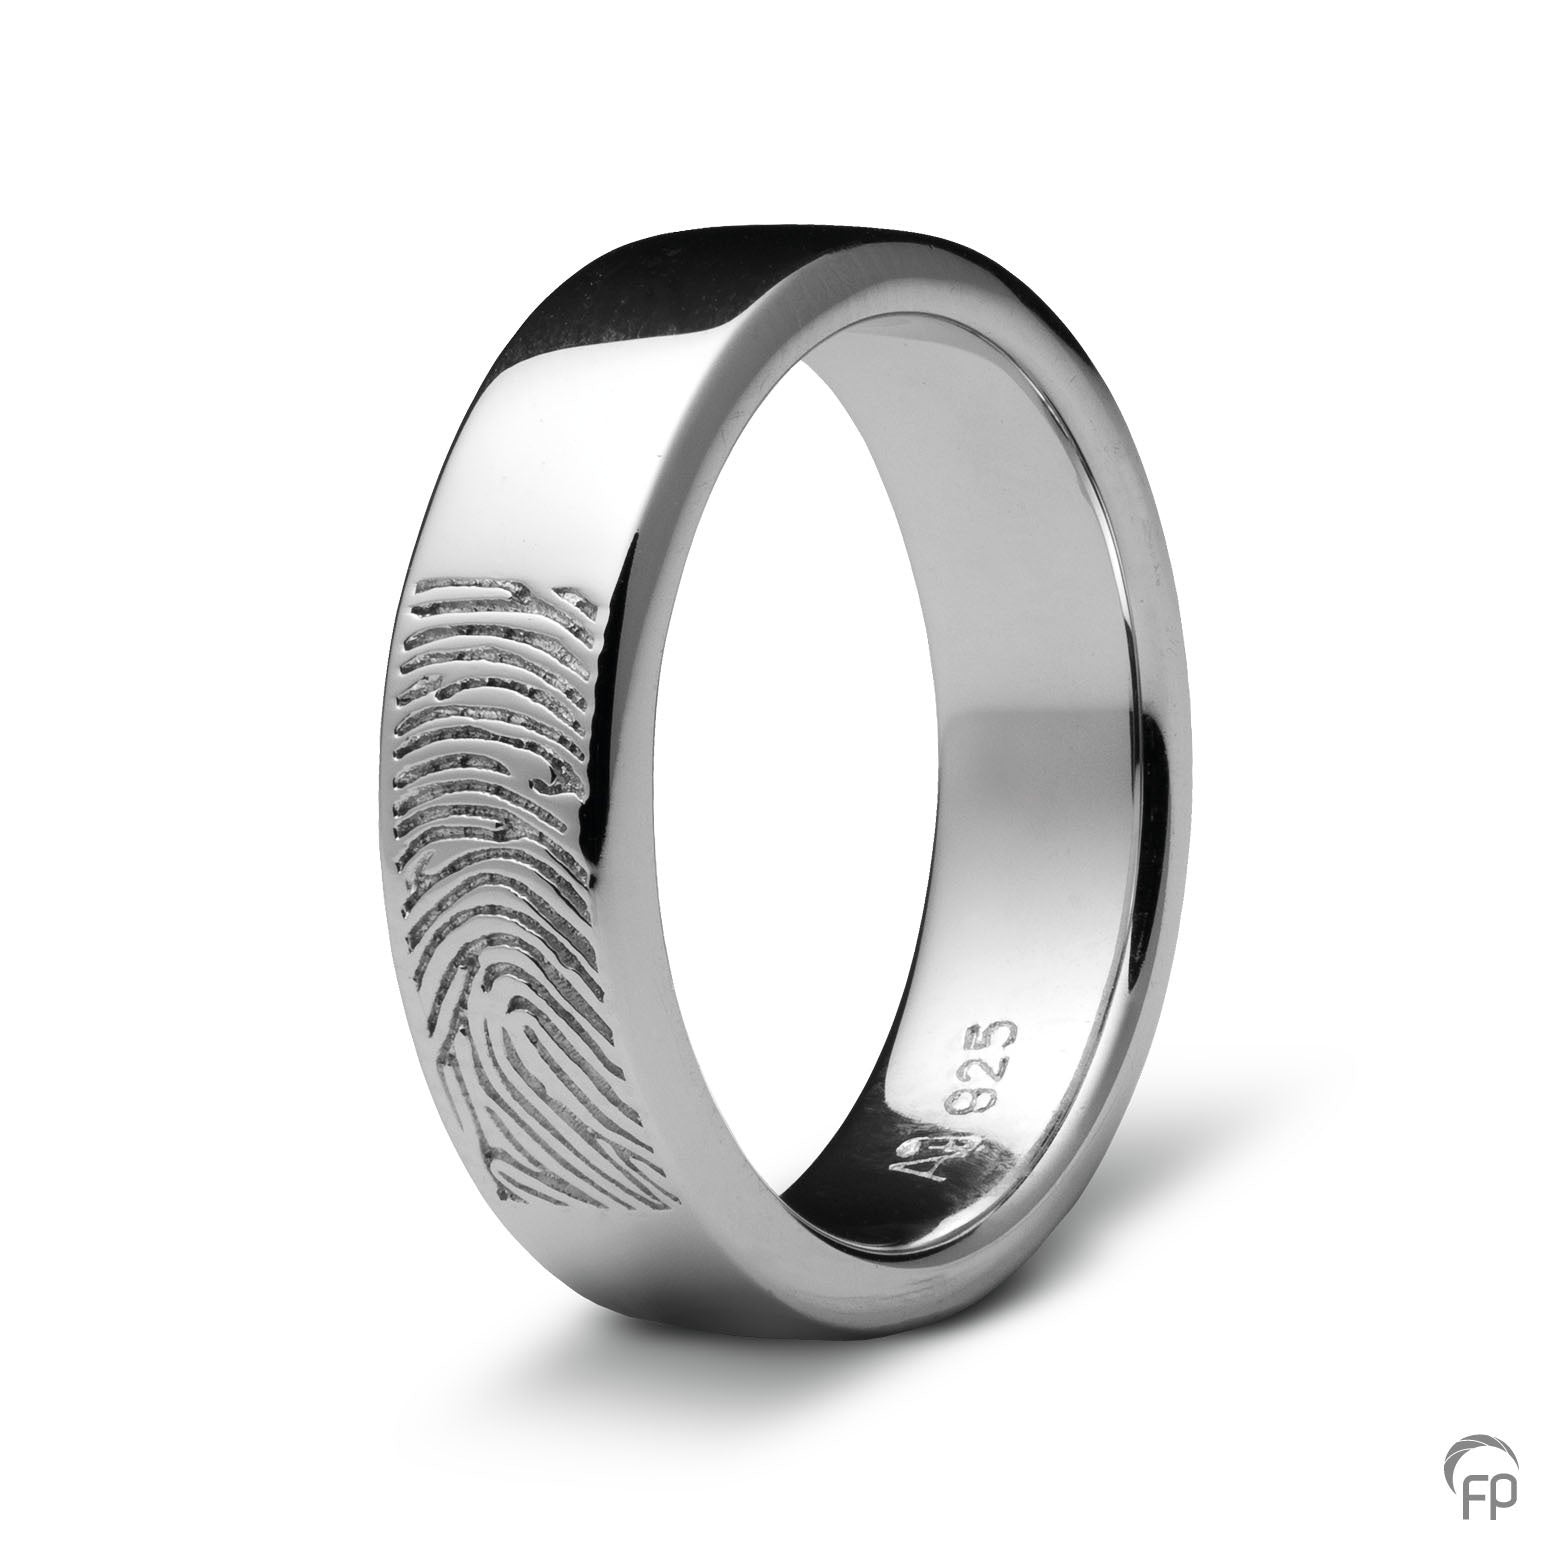 Deze ring van 6 mm breedte met vingerafdruk, heeft een stijlvol en strak design. Het is een tijdloos gedenksieraad met een afwerking naar keuze in glans of matte look. 